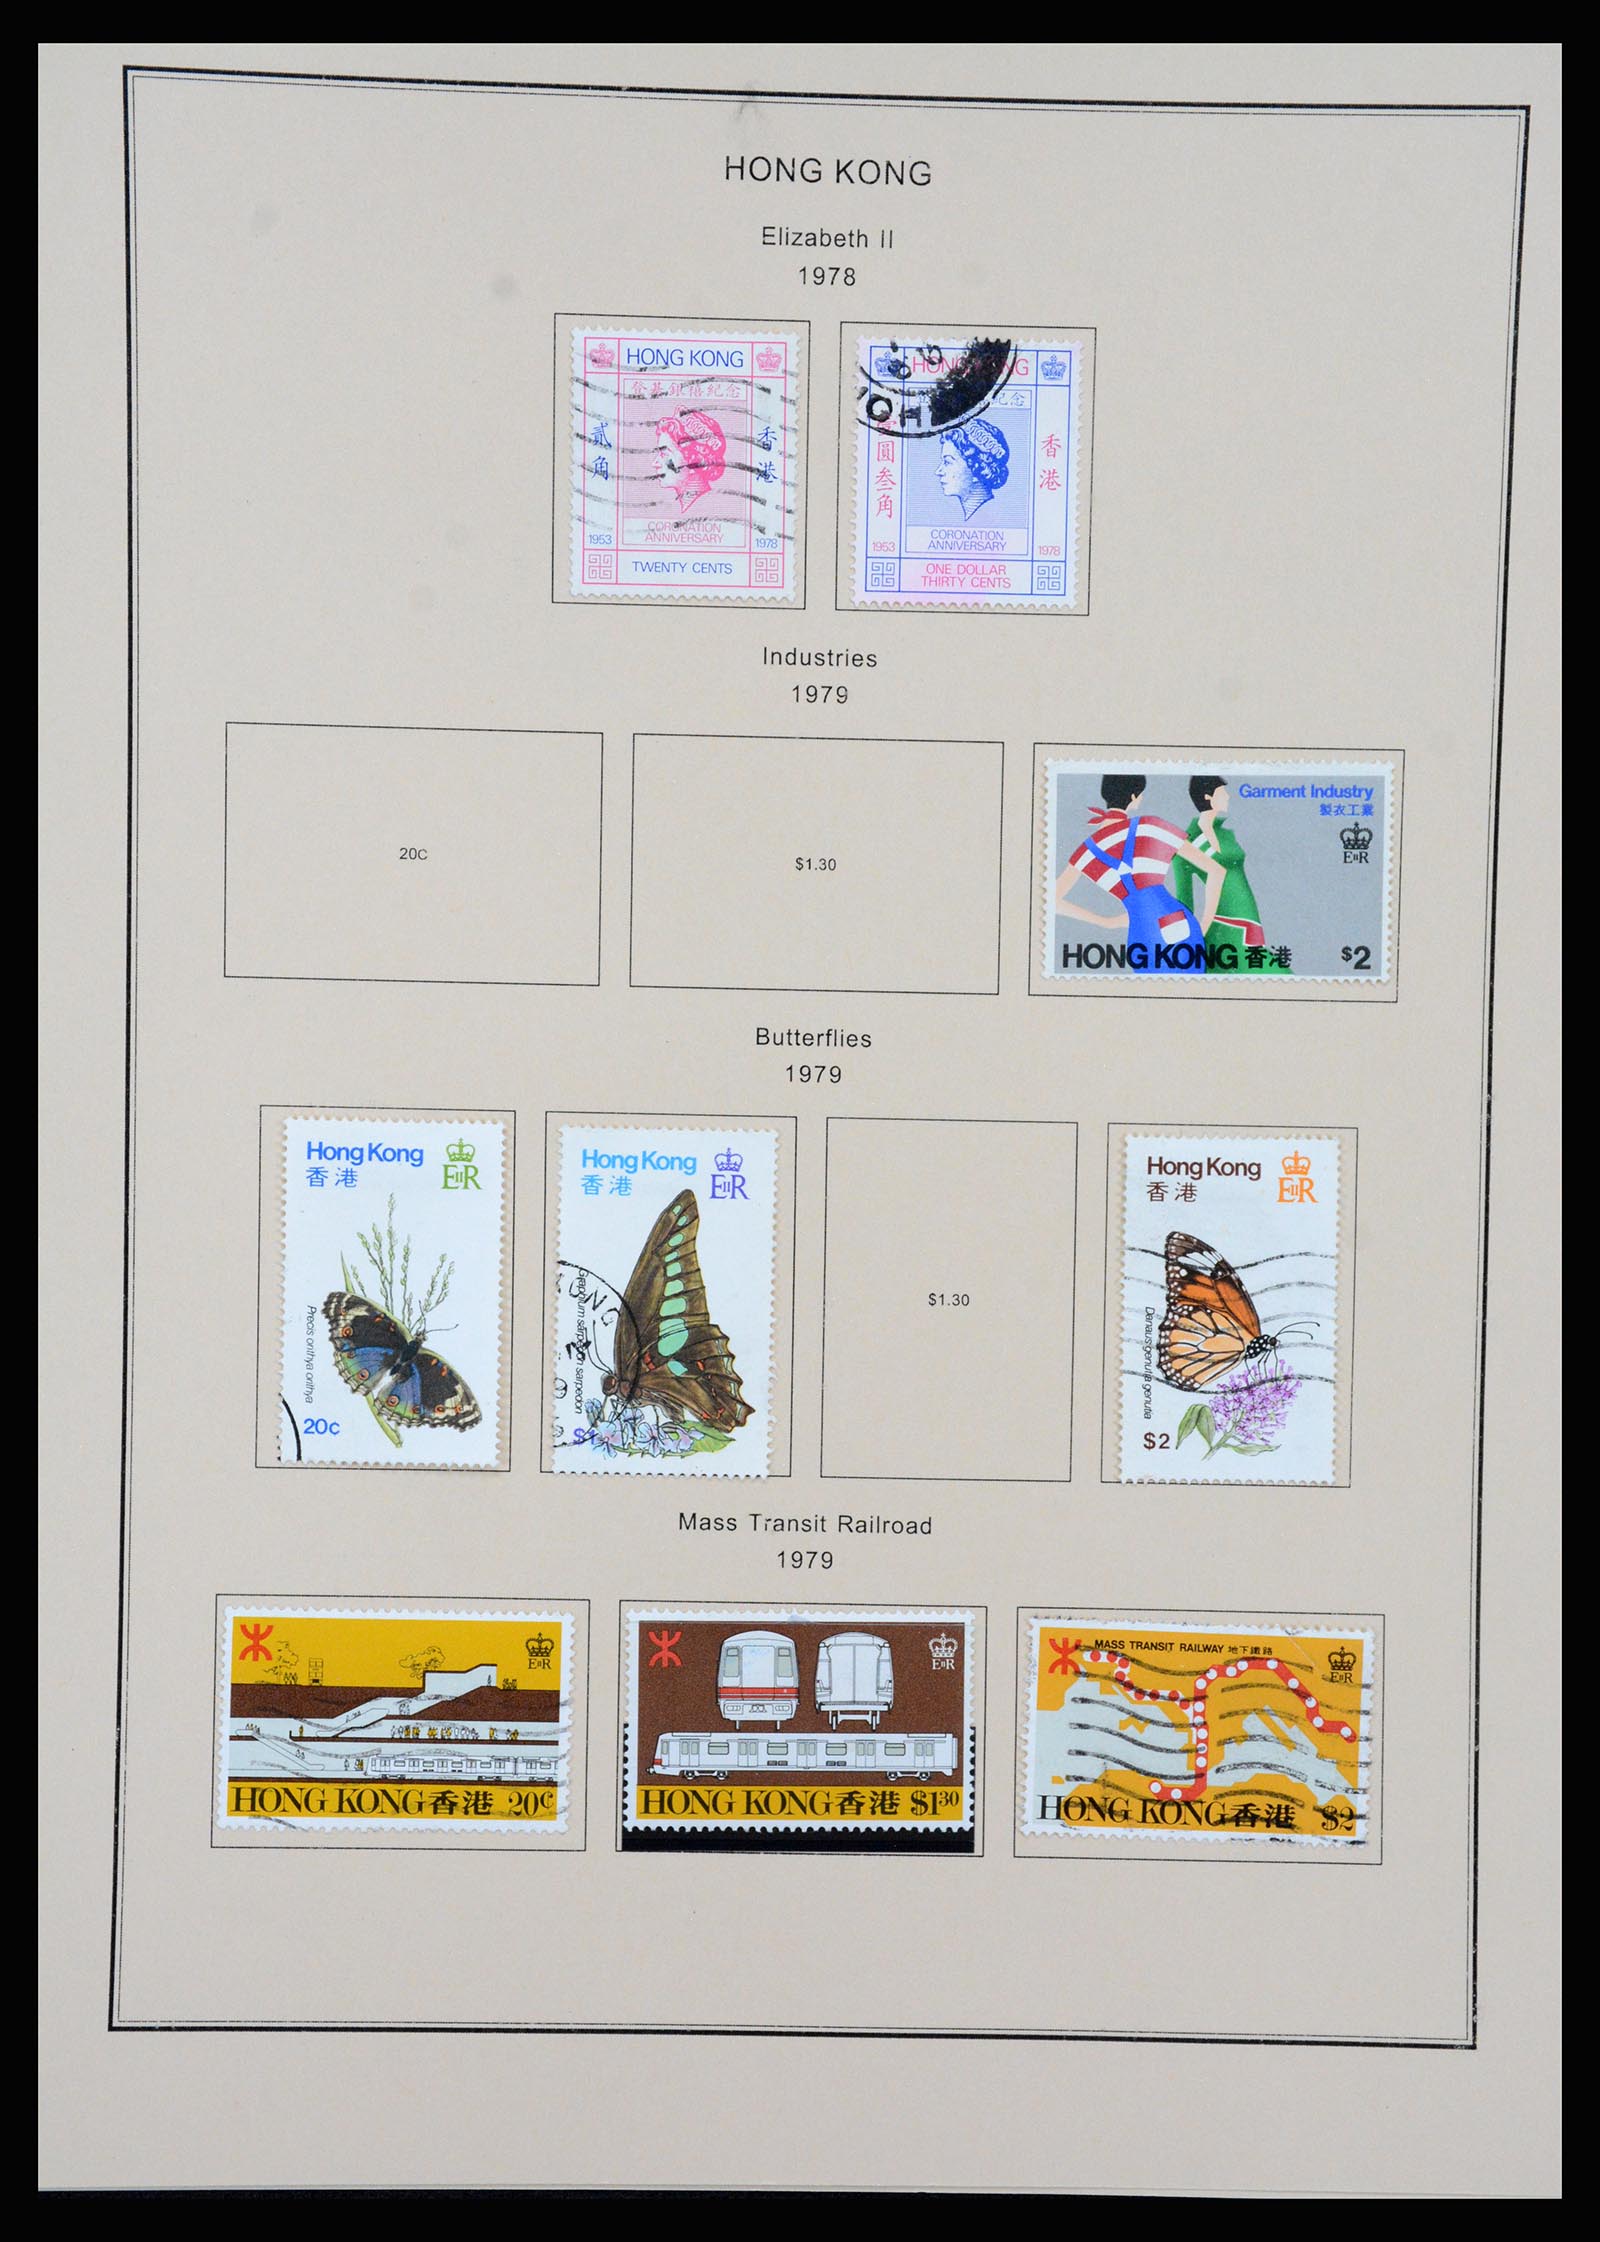 37210 037 - Stamp collection 37210 Hong Kong 1862-2000.